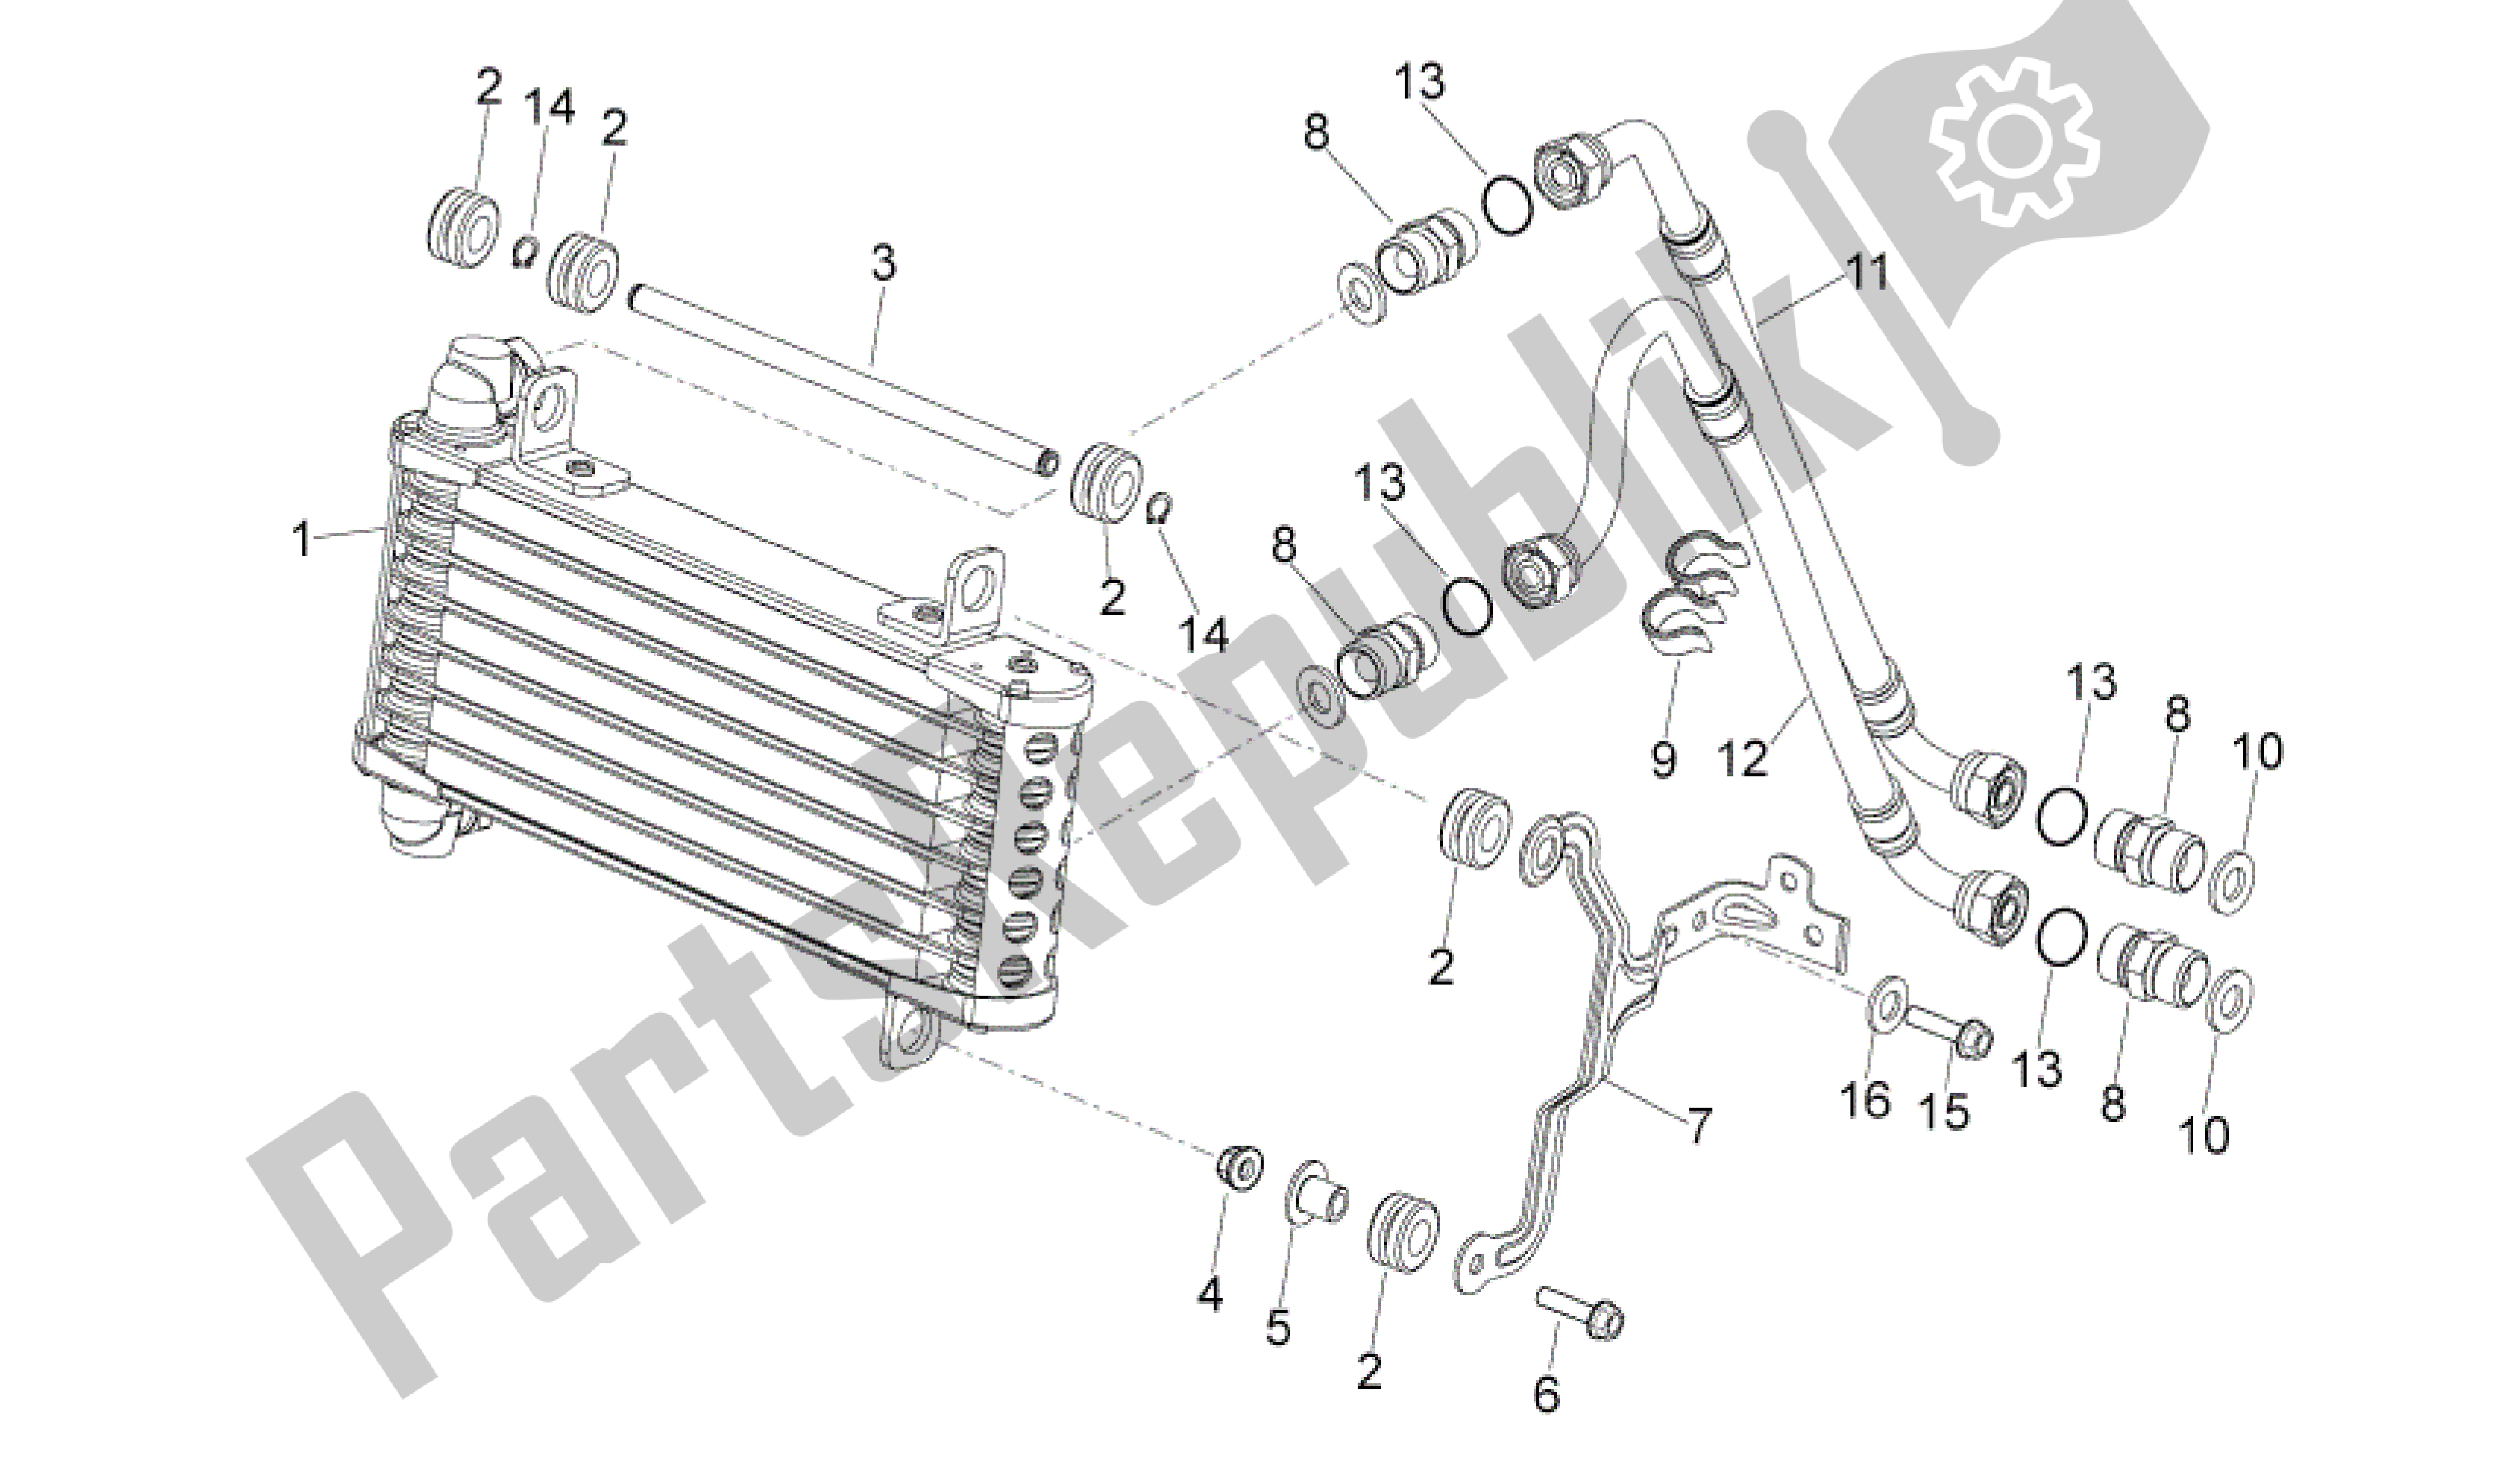 All parts for the Oil Radiator of the Aprilia Dorsoduro 1200 2010 - 2013